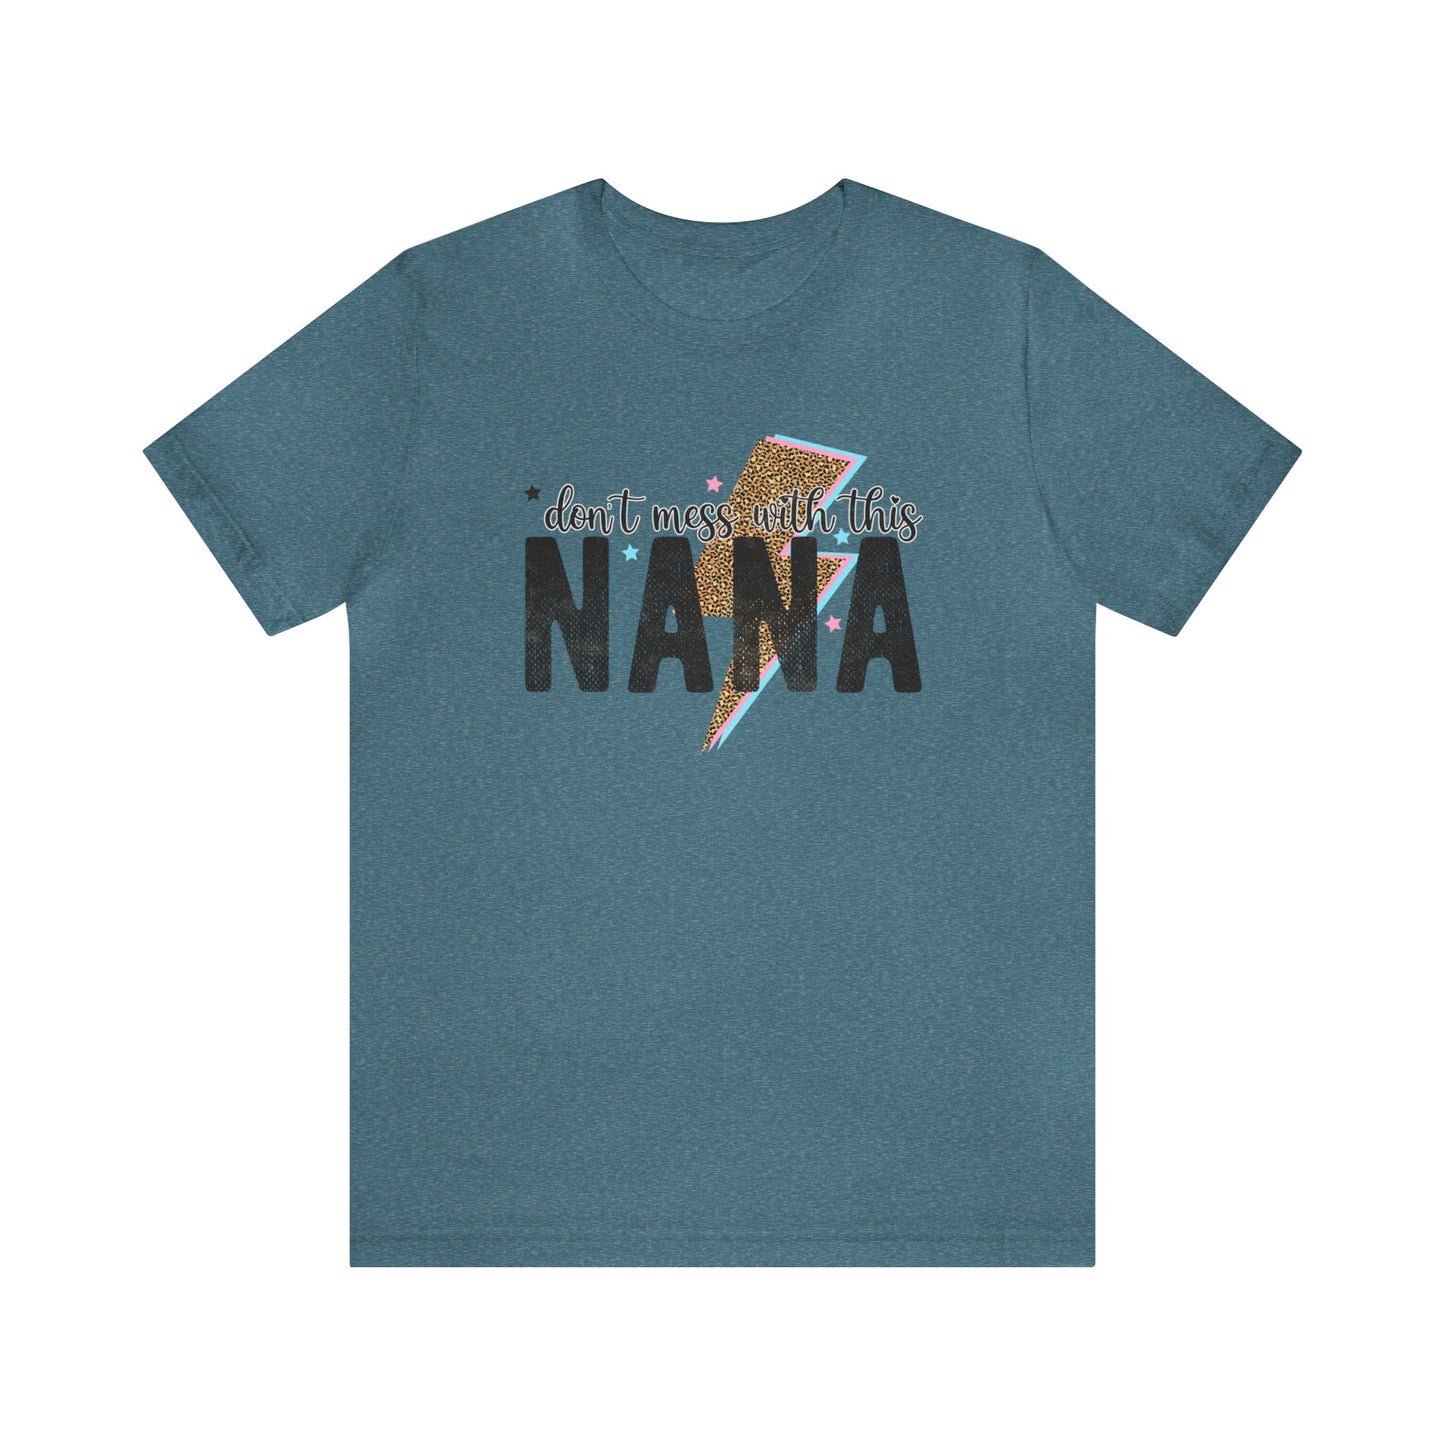 Don't mess with nana Women's Tshirt